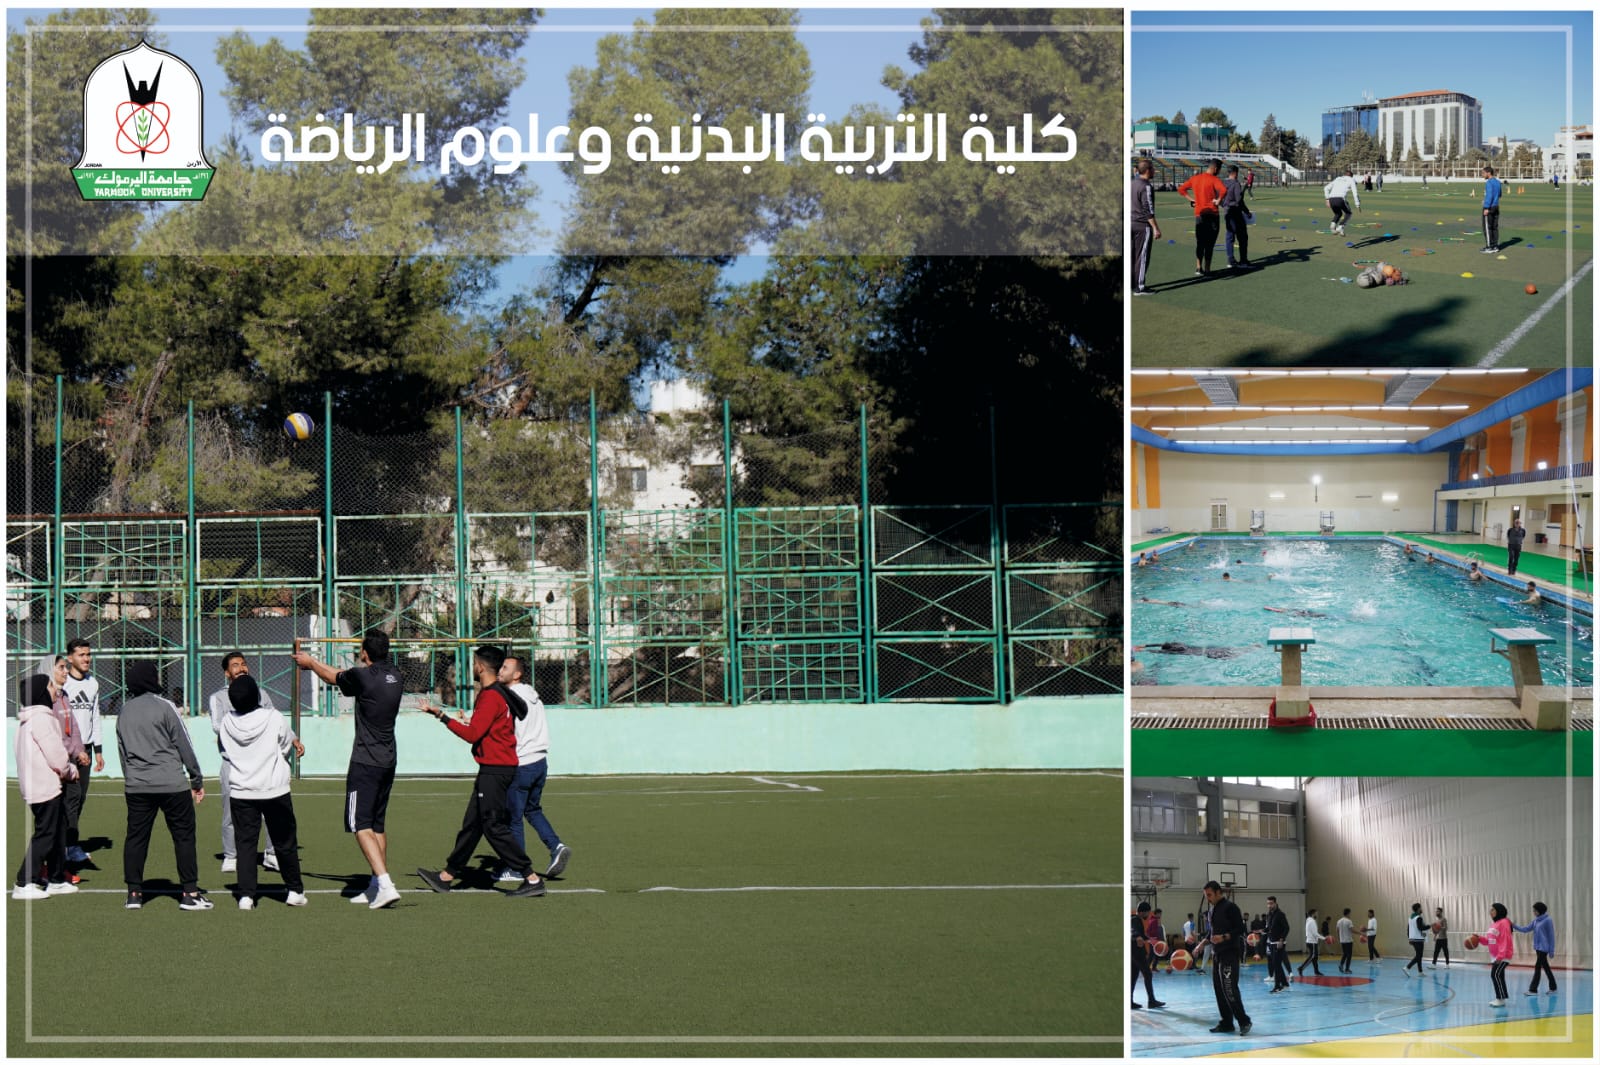 "اليرموك": تغيير مسمى كلية التربية الرياضية إلى كلية التربية البدنية وعلوم الرياضة